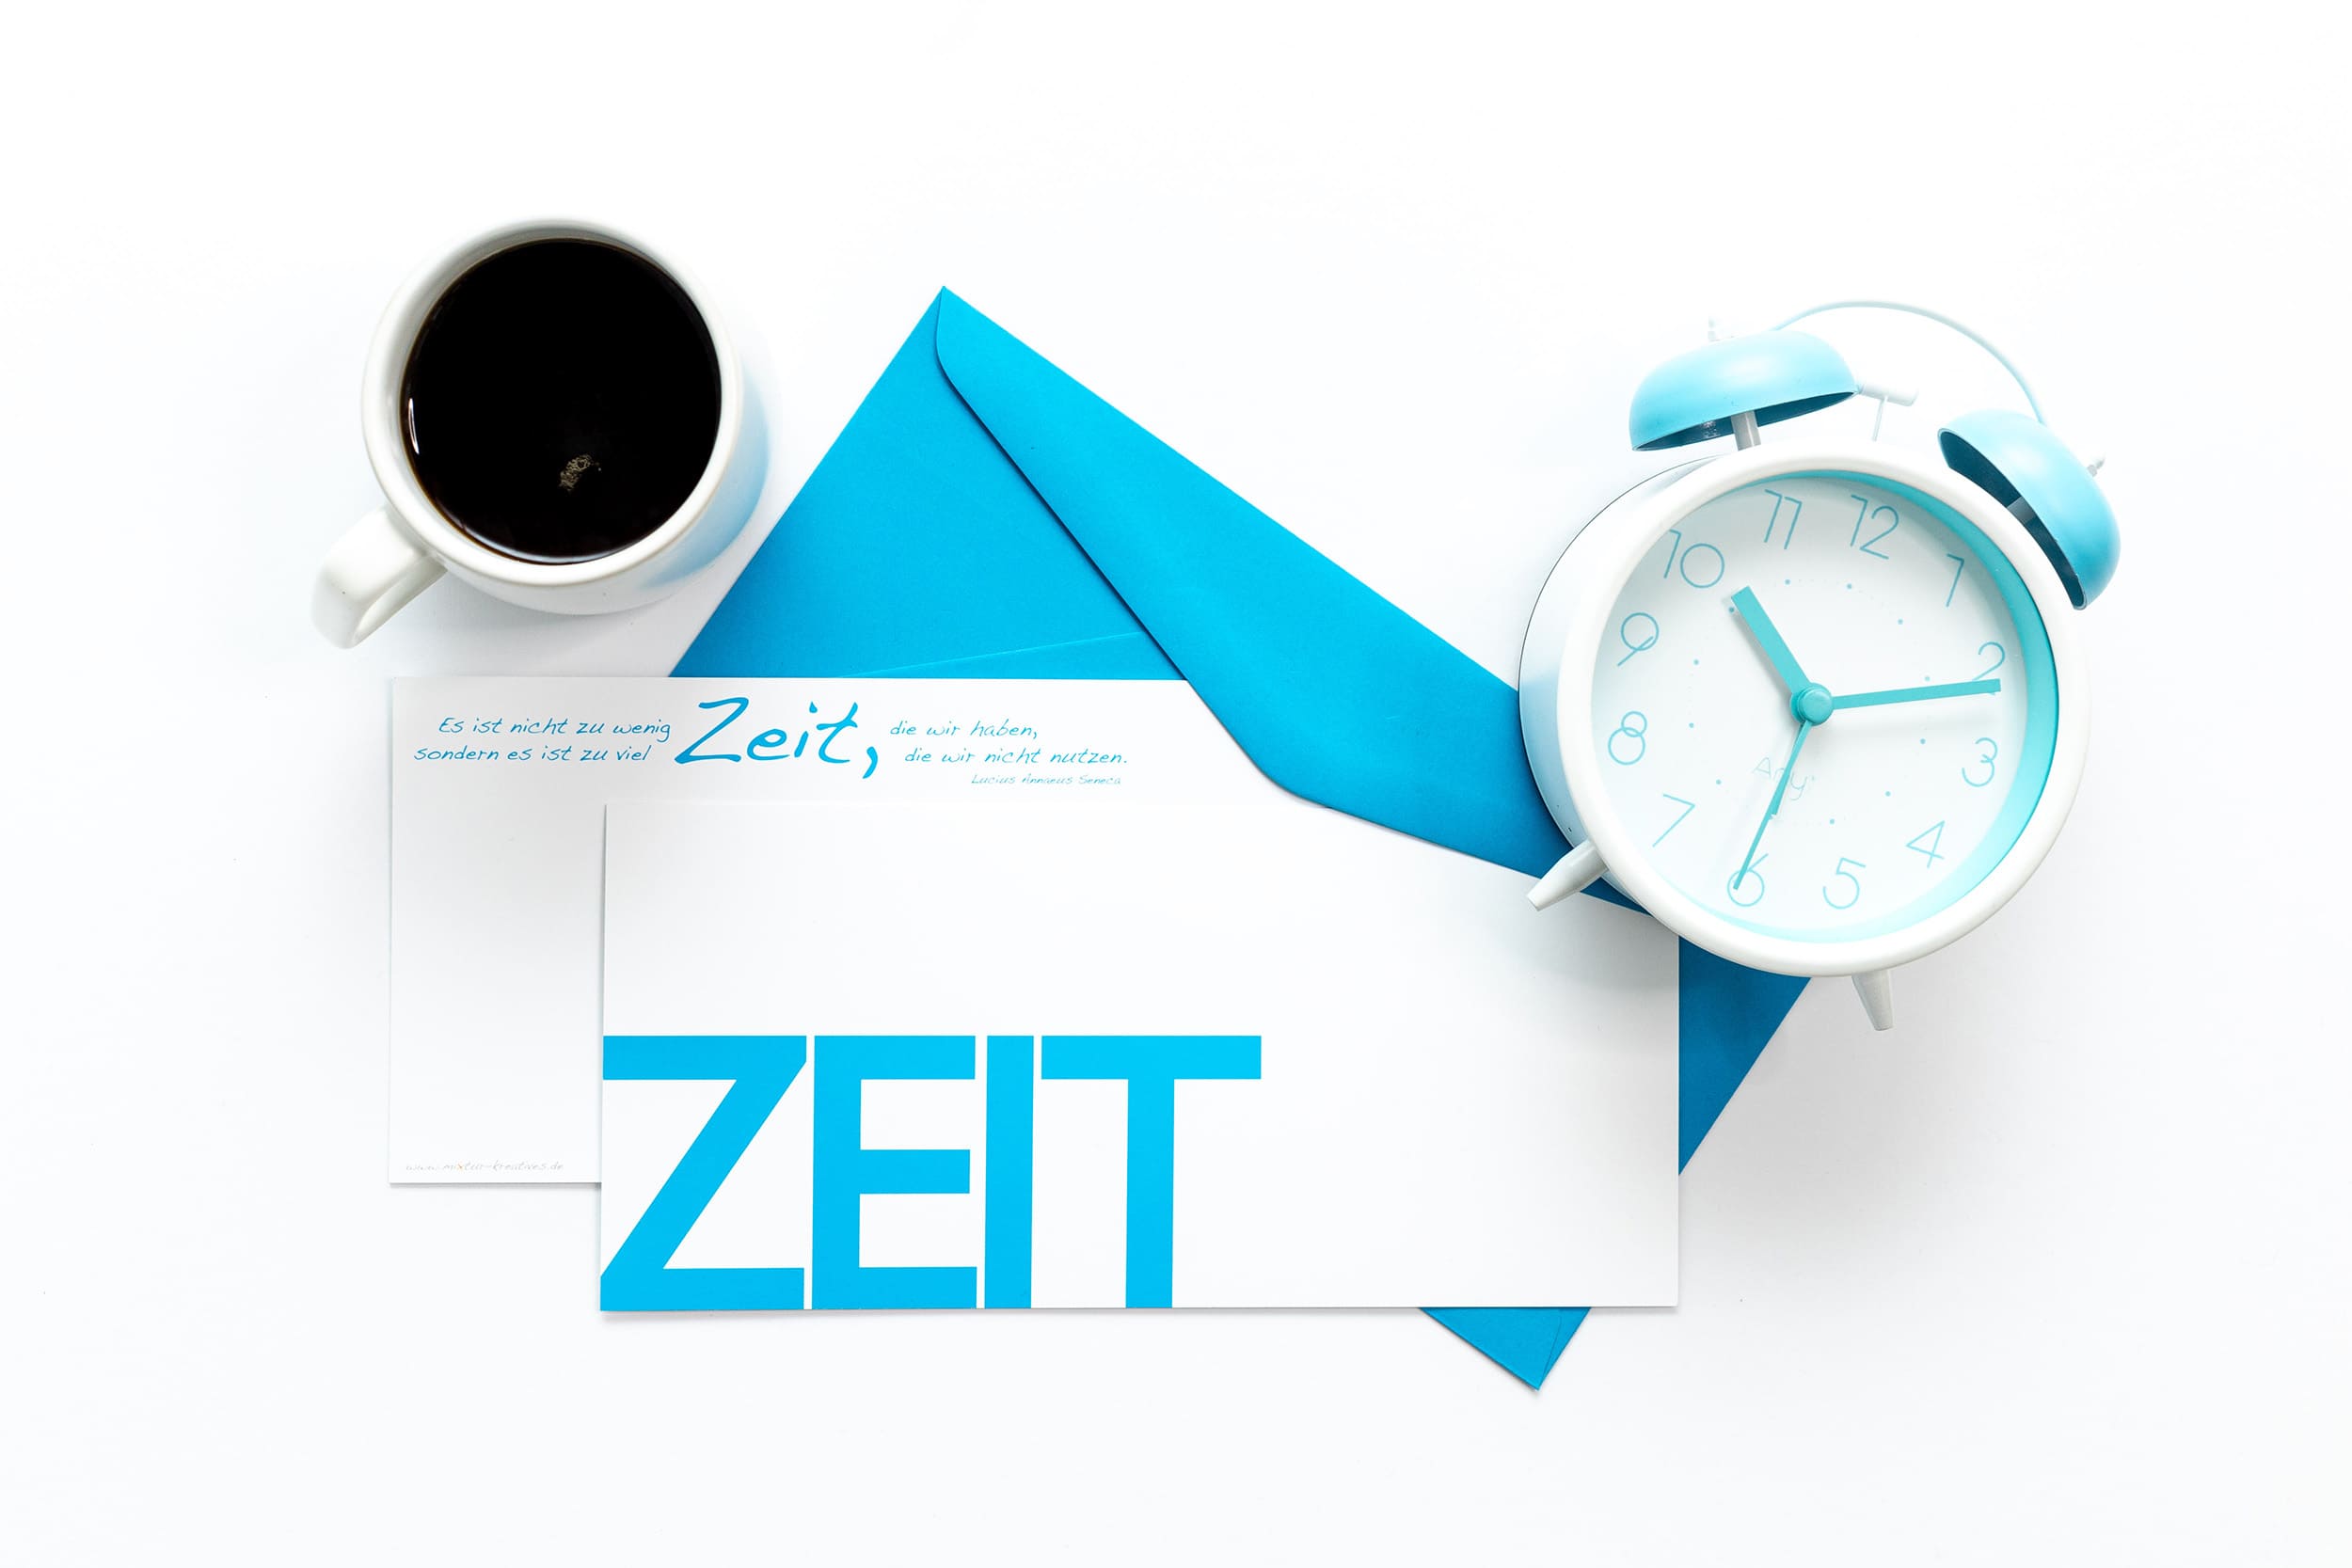 Grußkarte "ZEIT" mit passenden Accessoires: blauer Wecker und Tasse Kaffee